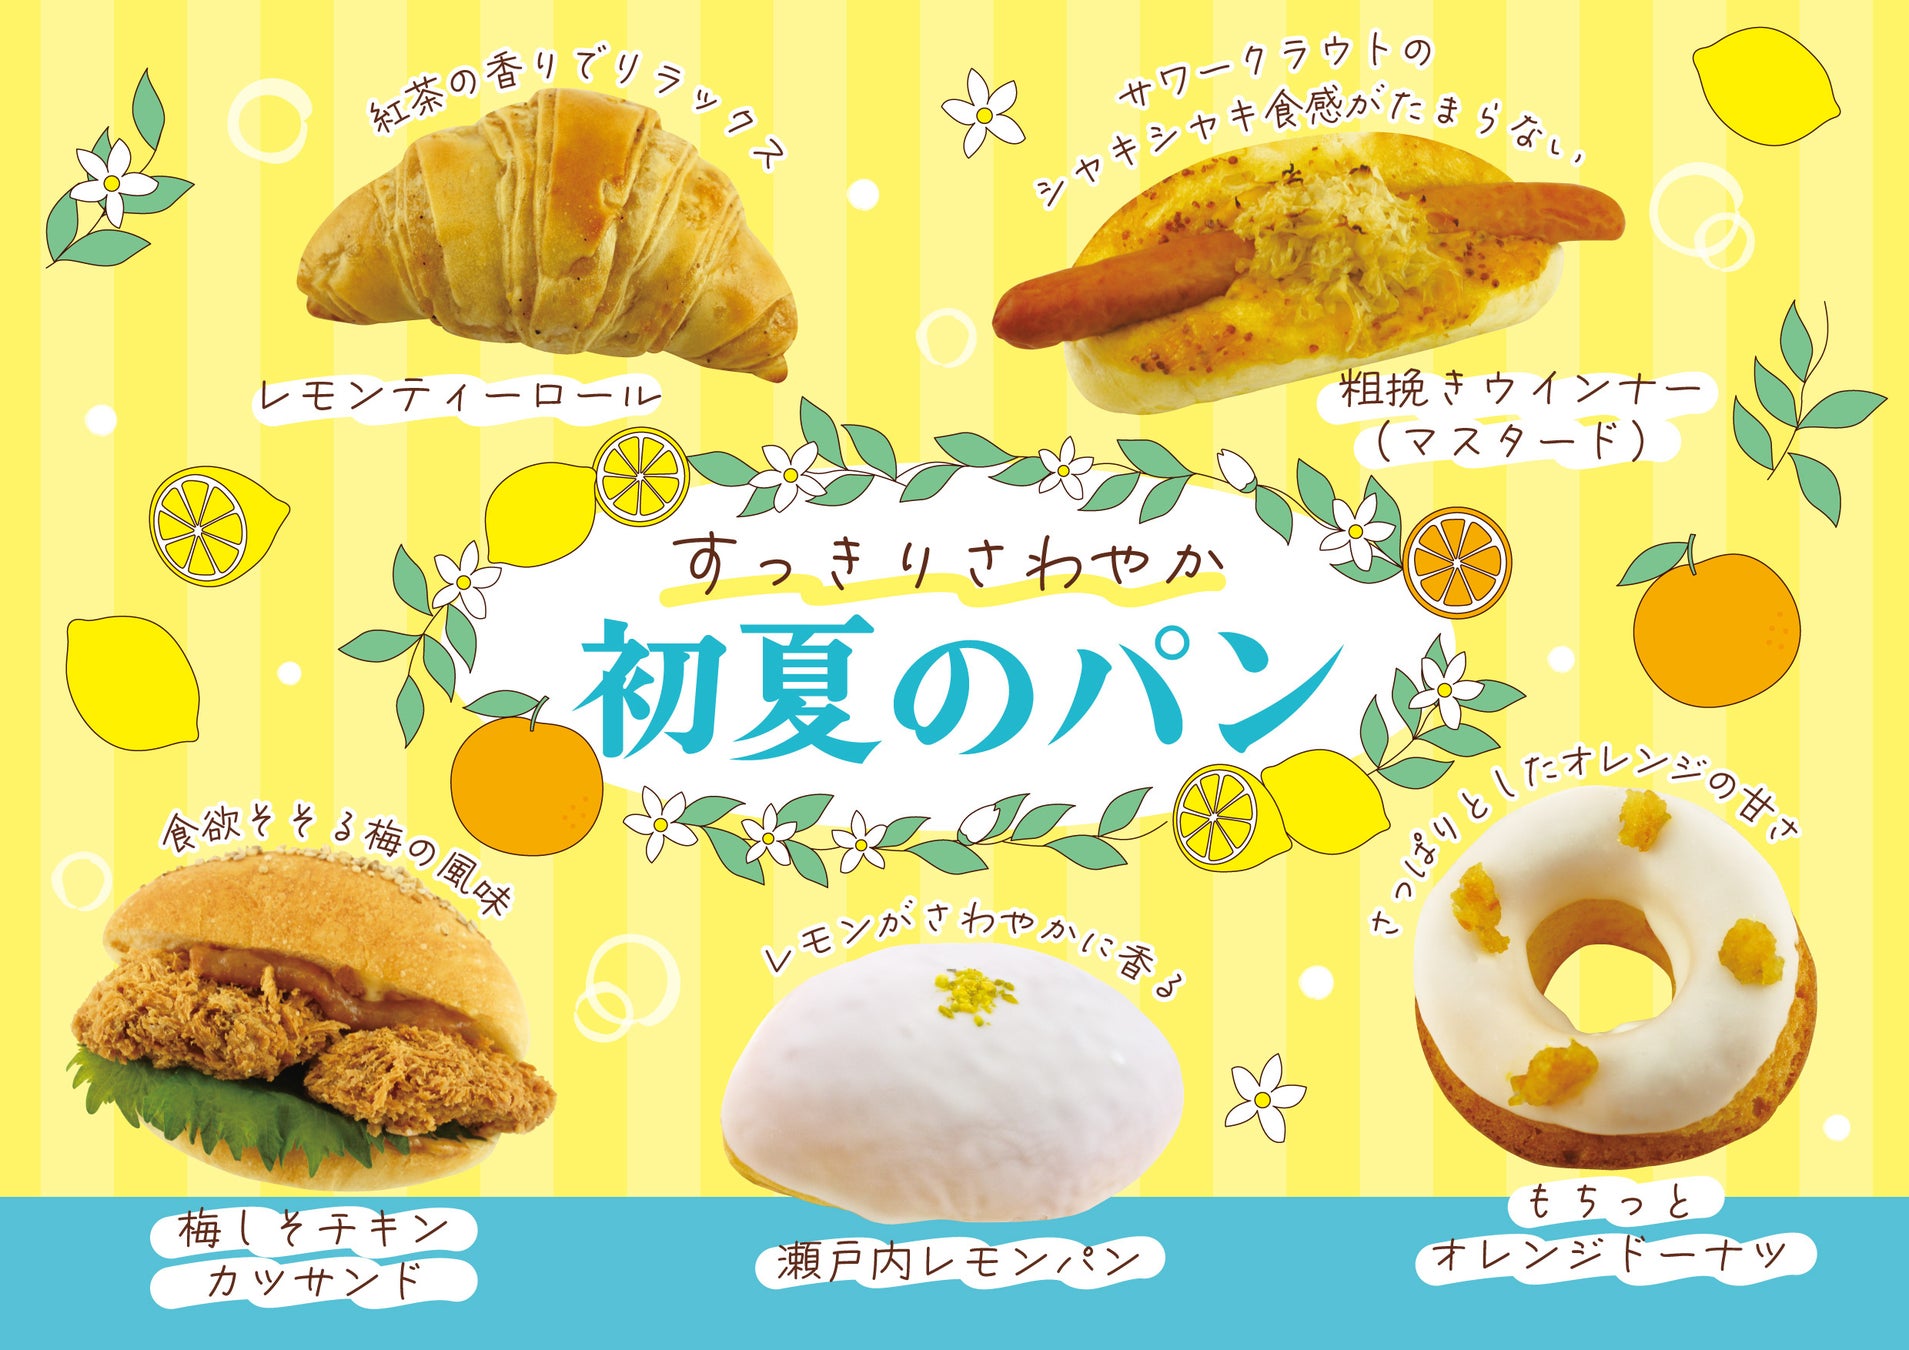 【フレッズカフェ】～パンで感じる初夏の風～『すっきりさわやかな初夏』をテーマに新商品を販売いたします。